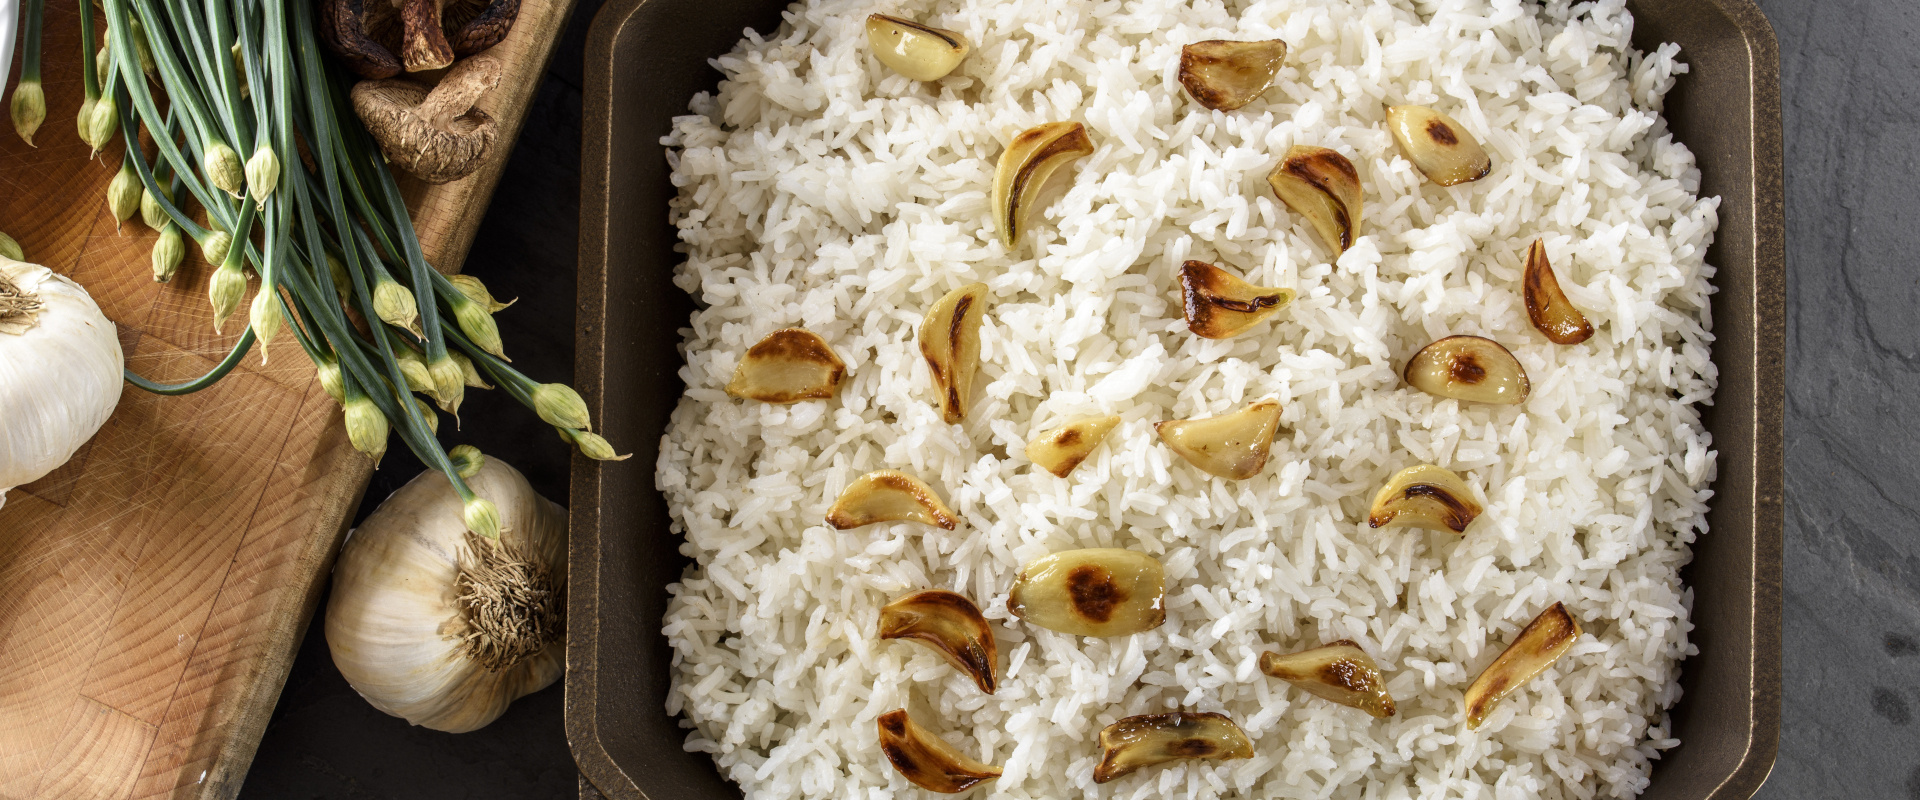 sült fokhagymás rizs cover